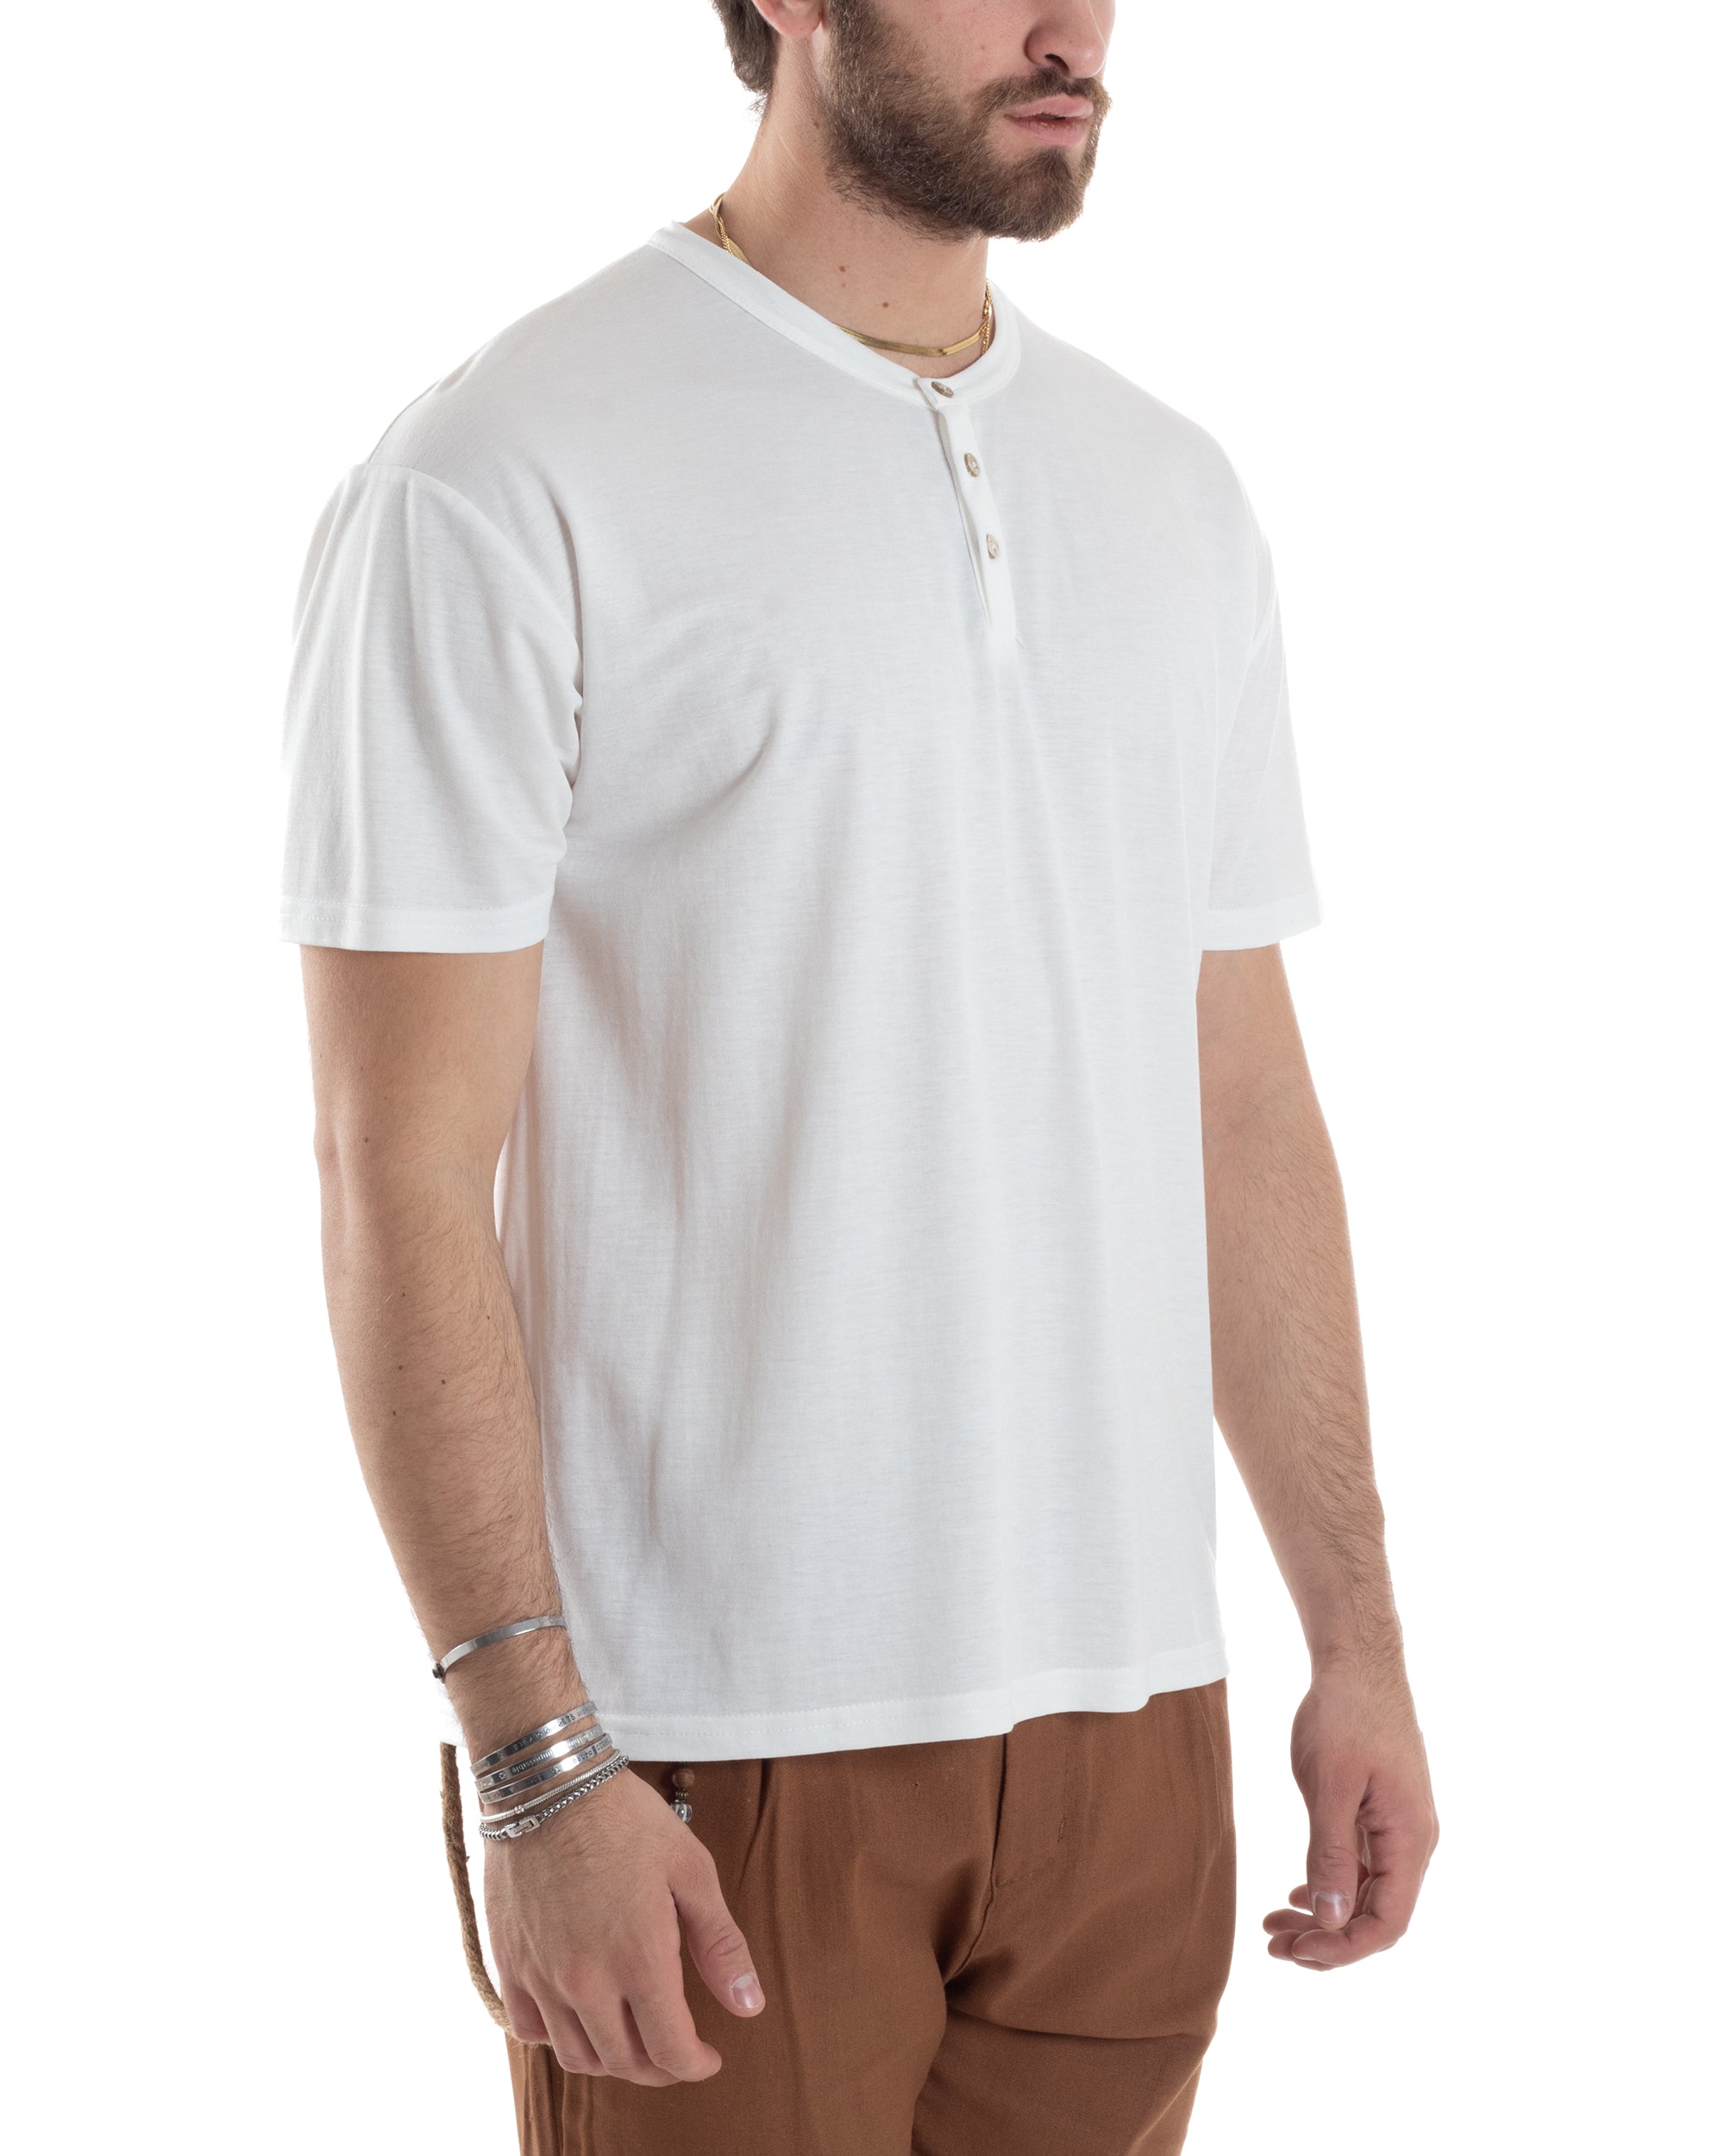 T-shirt Uomo Manica Corta Viscosa Collo Serafino Maglia Con Bottoni Casual Bianco GIOSAL-TS3035A